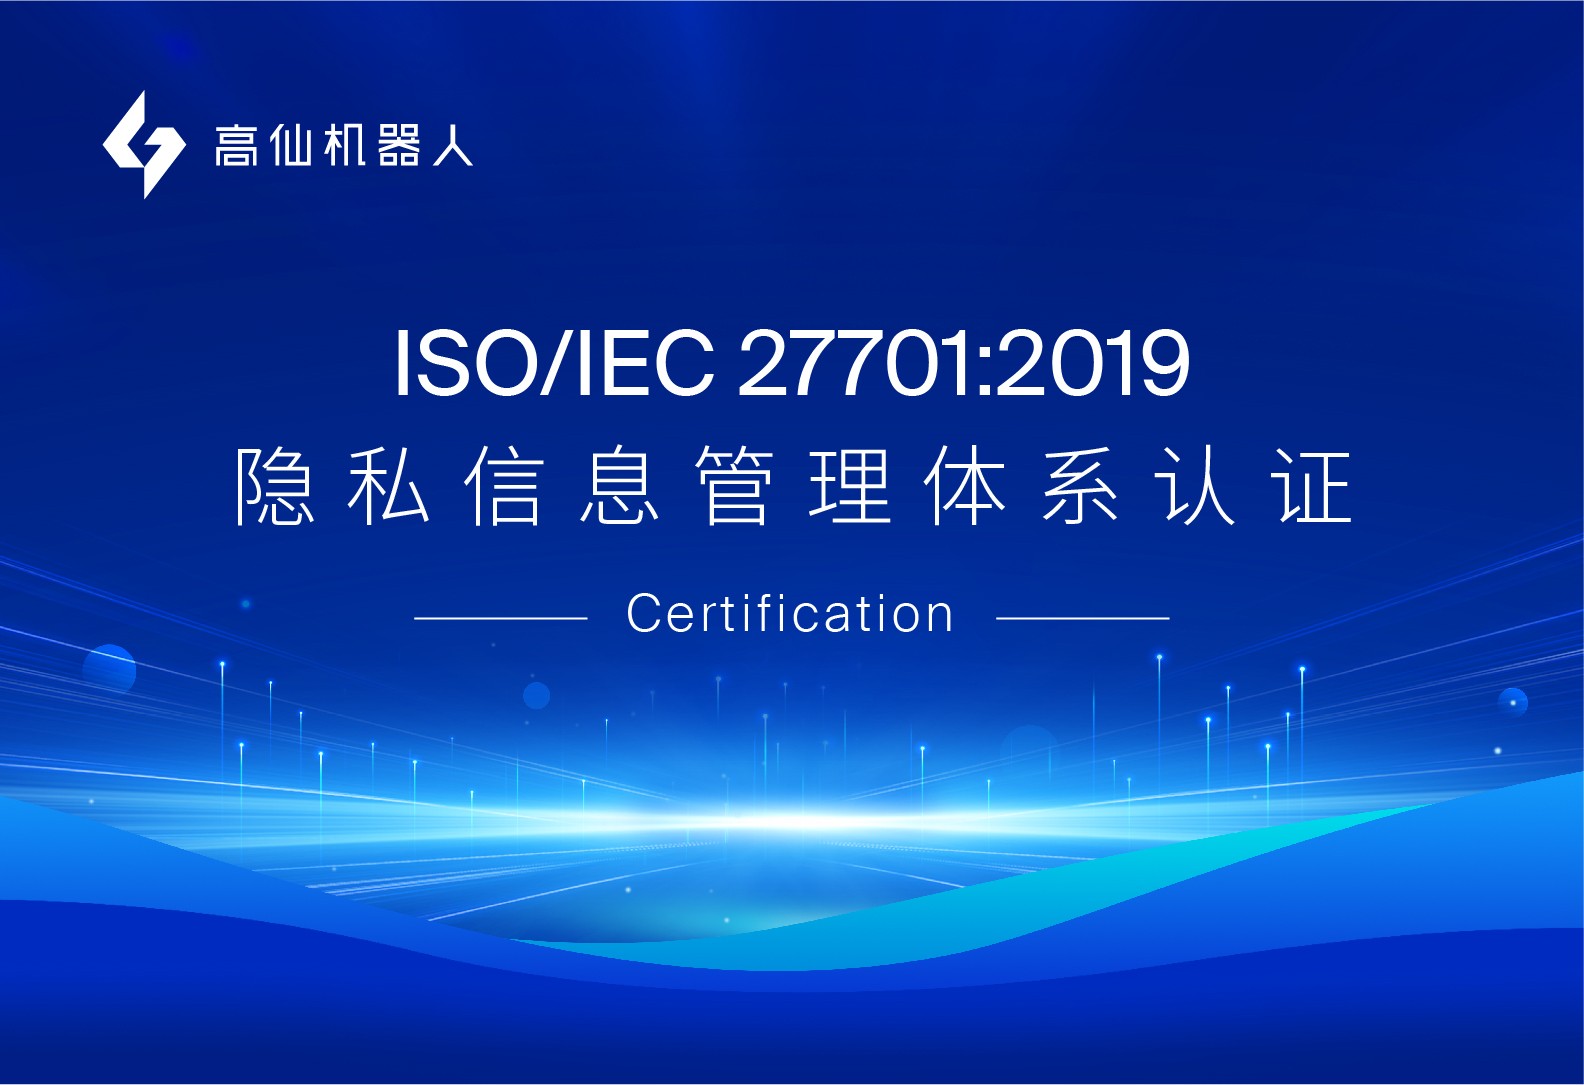 高仙获SGS中国颁发的首张UKAS授权ISO/IEC 27701:2019证书